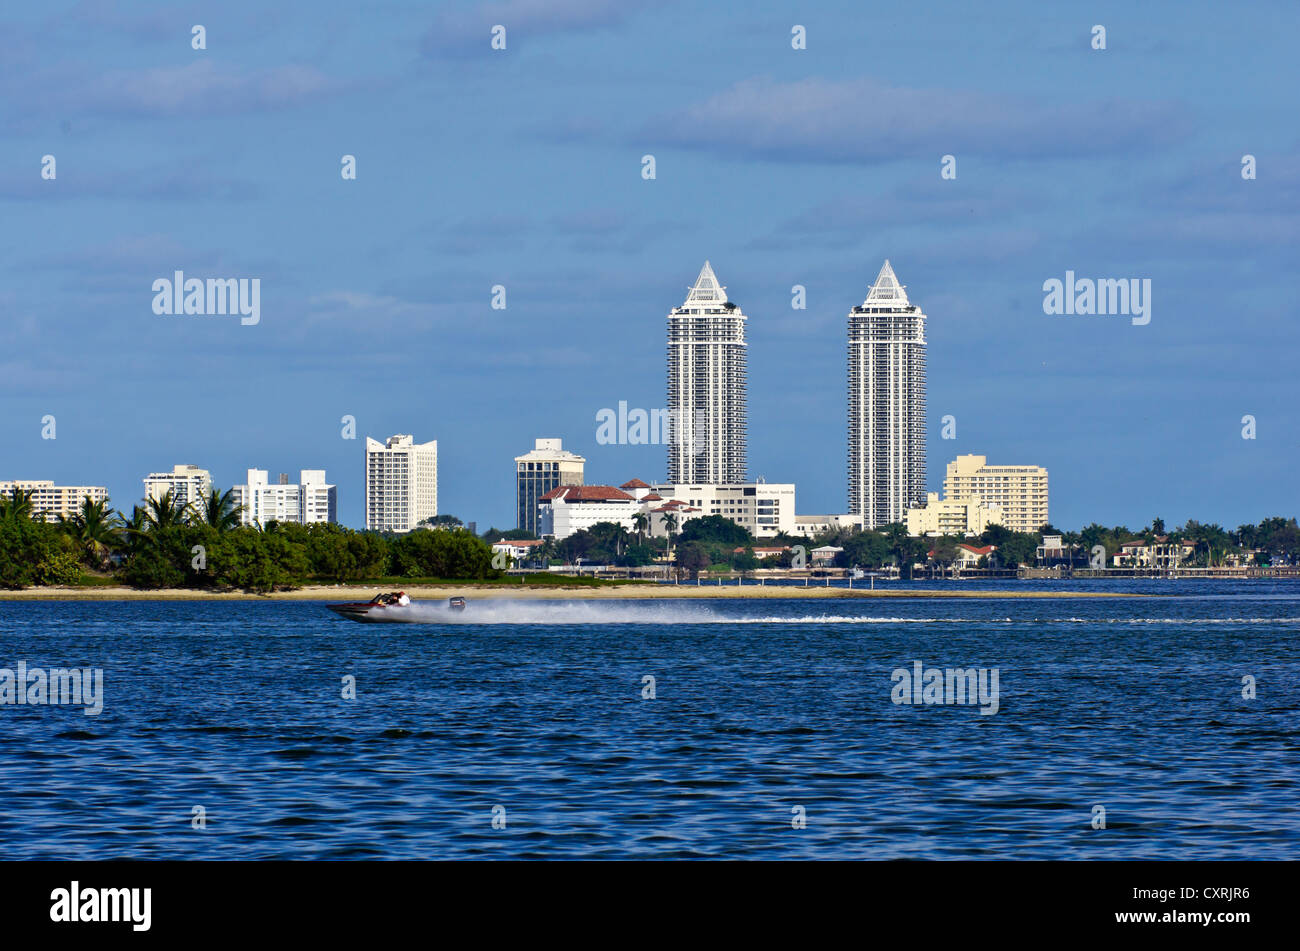 Skyline au Mount Sinai Medical Center de Morningside Park avec bateau à moteur, Miami, Floride, USA Banque D'Images